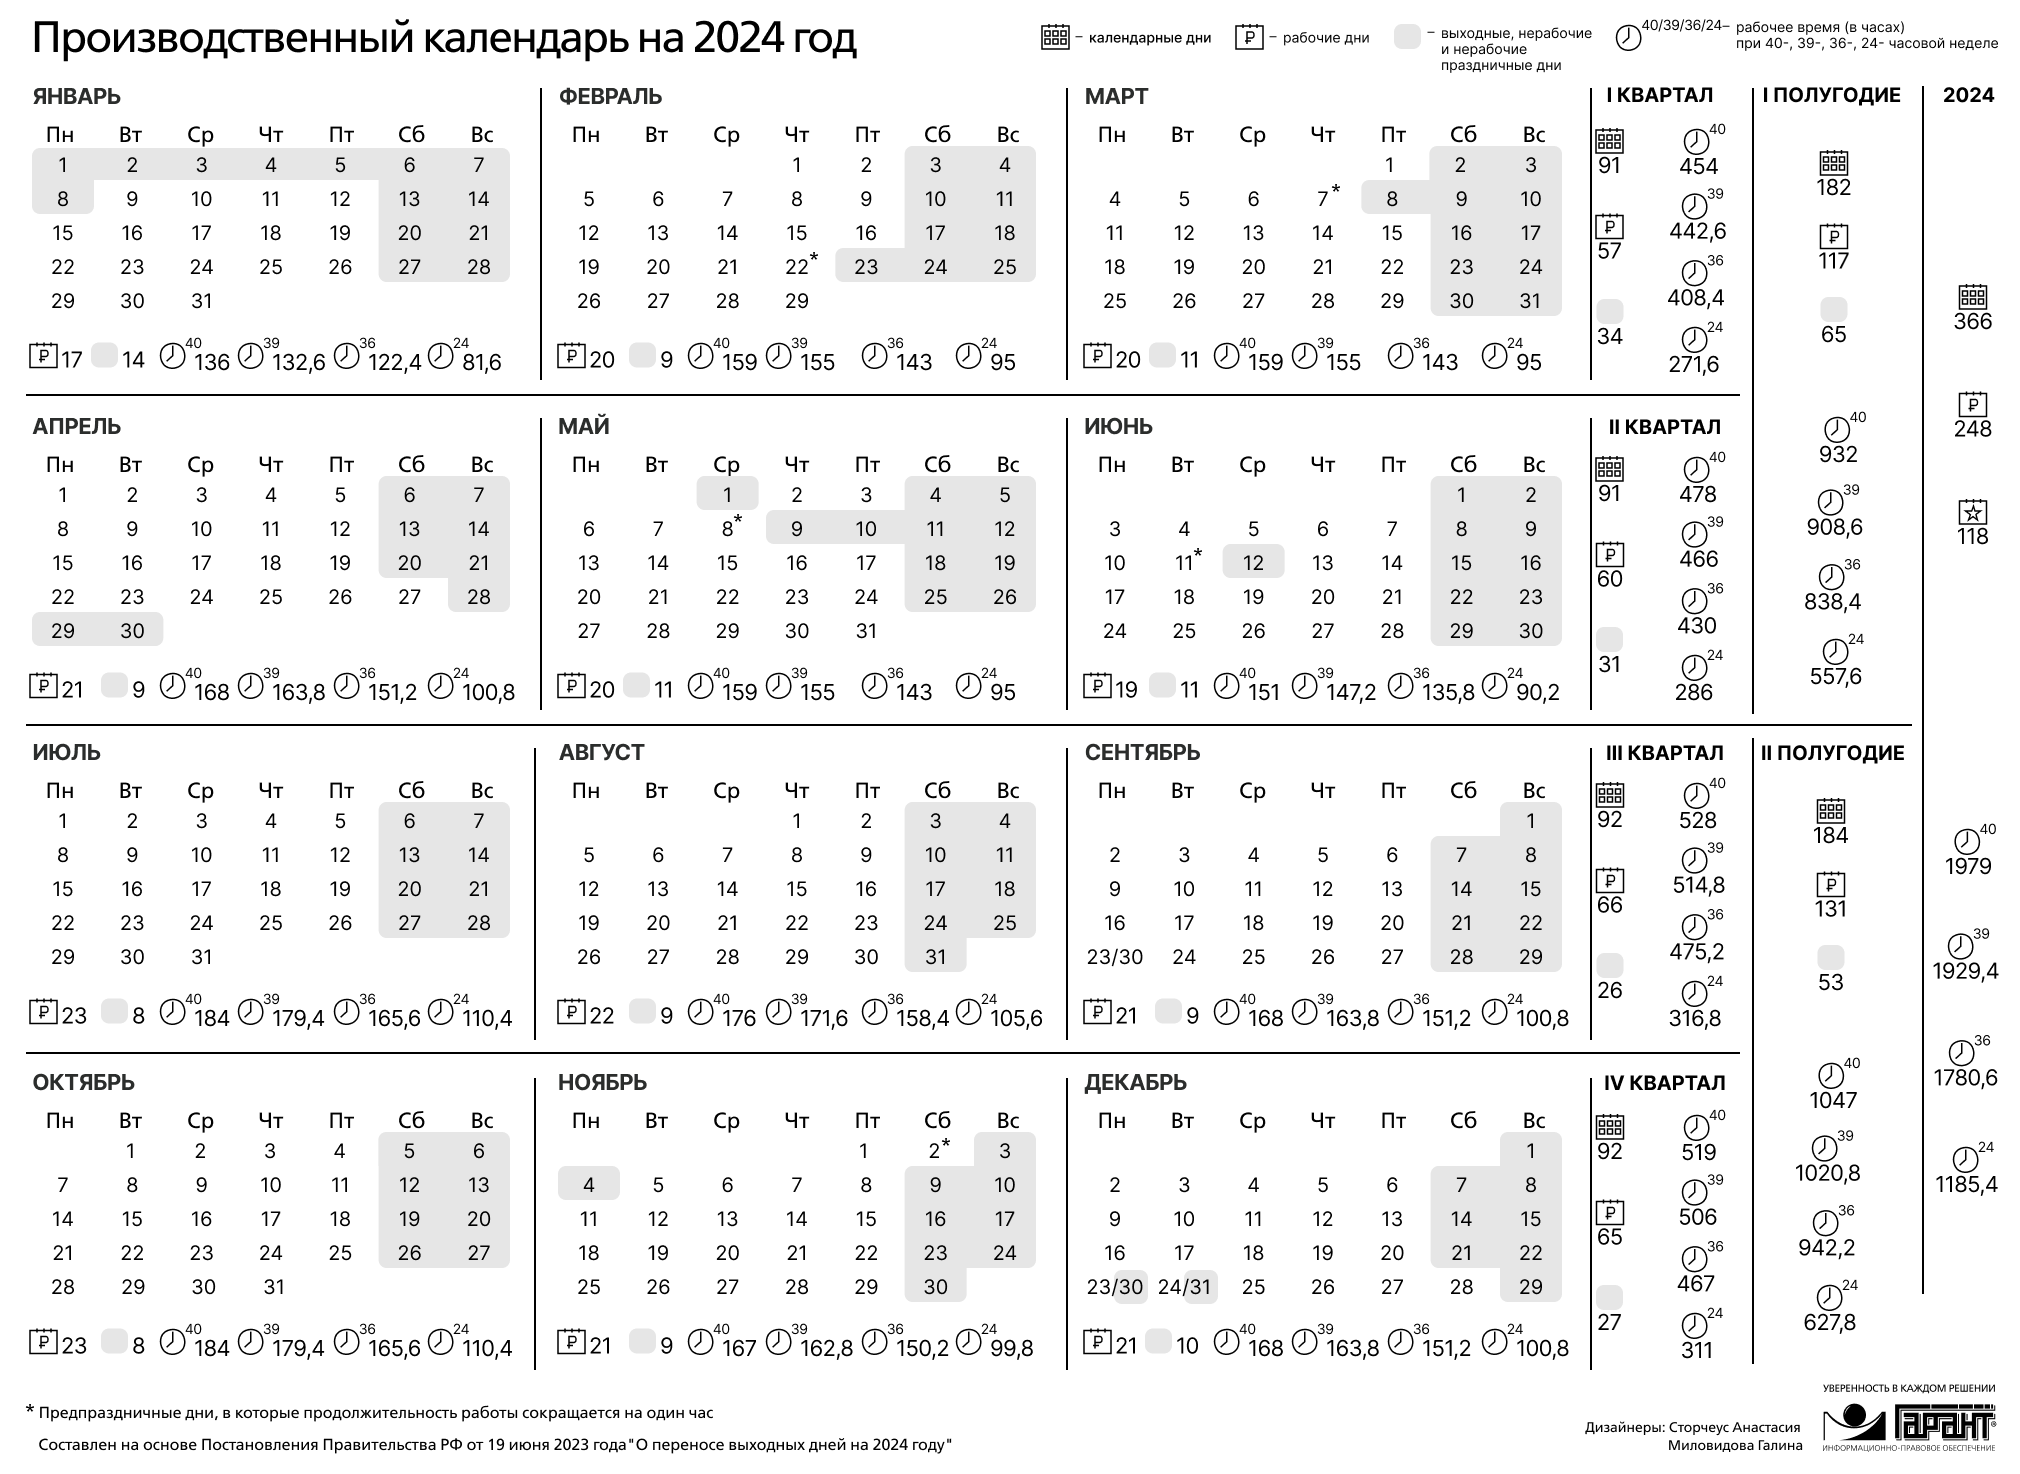 Праздничные дни 2024 года в России производственный календарь. Календарь на 2024 год с праздниками и выходными производственный РФ. Производственный календарь на 2024 го од. Зводственный календарь на 2024.